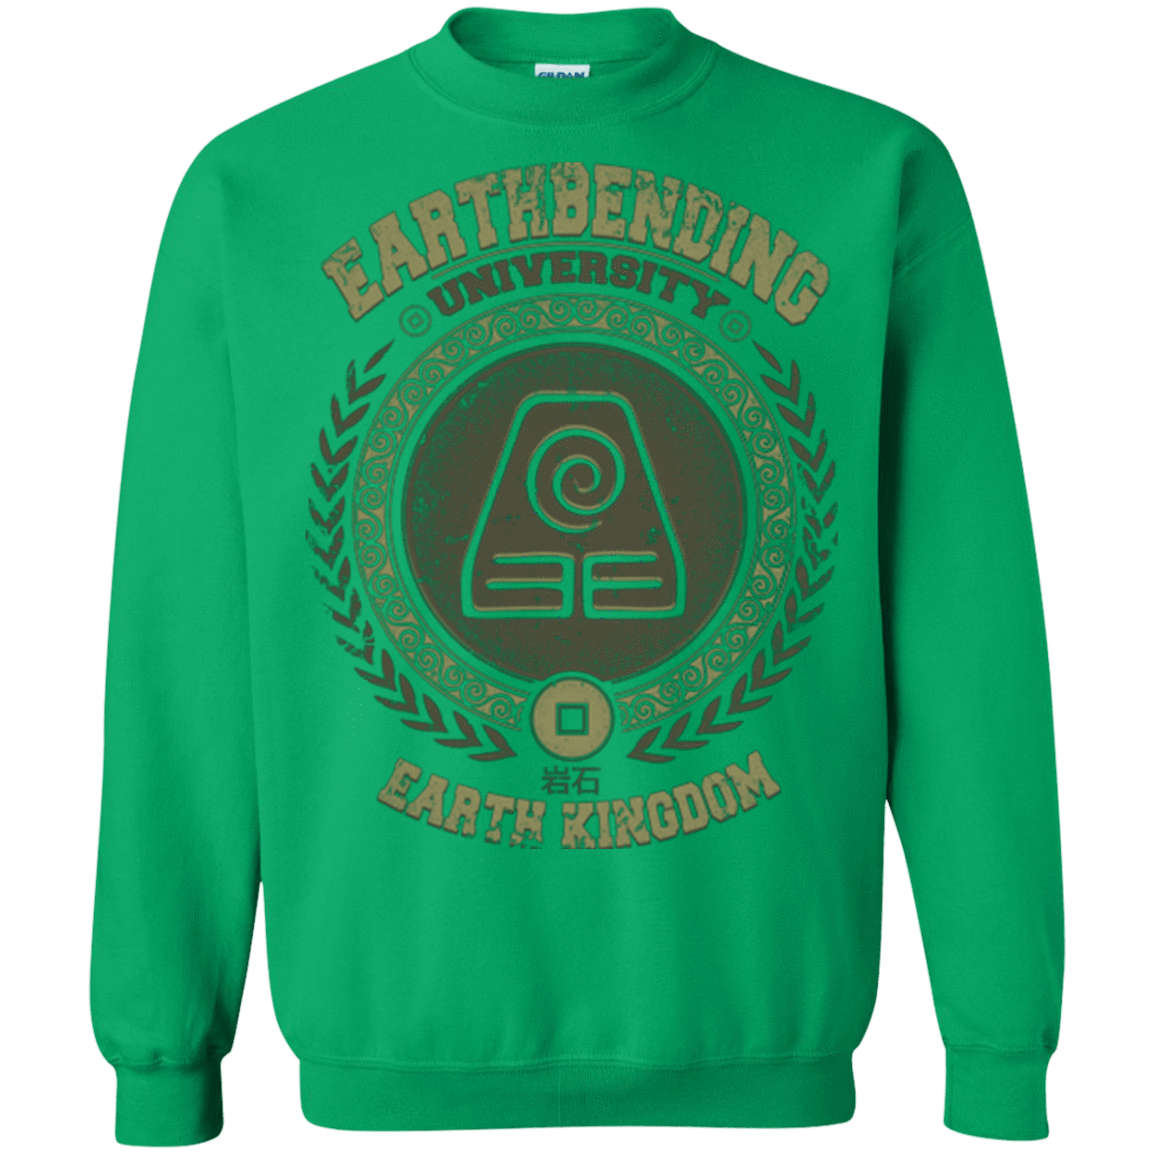 Sweatshirts Irish Green / Small Earthbending university Crewneck Sweatshirt